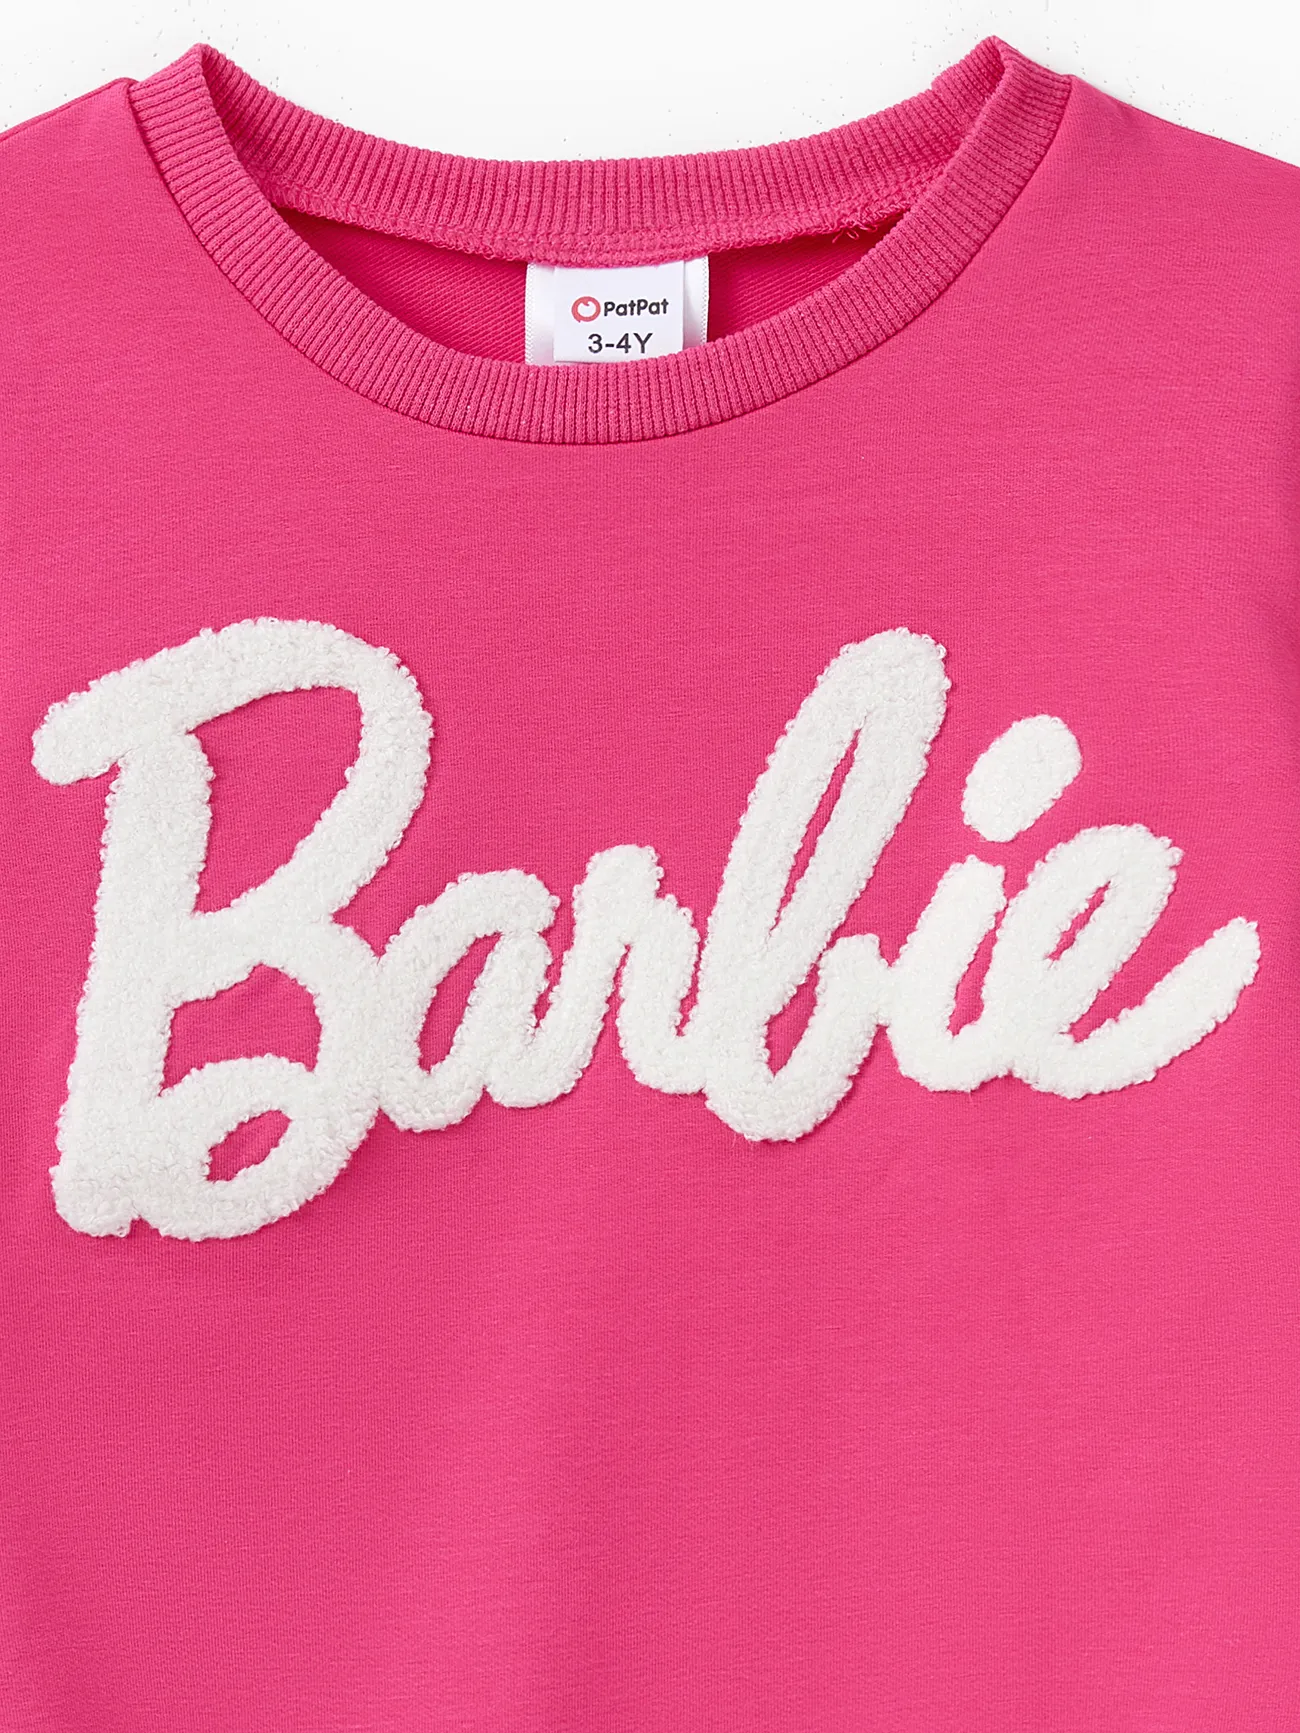 Barbie Mommy and Me Brief Besticktes langärmeliges Baumwoll-Sweatshirt roseo big image 1